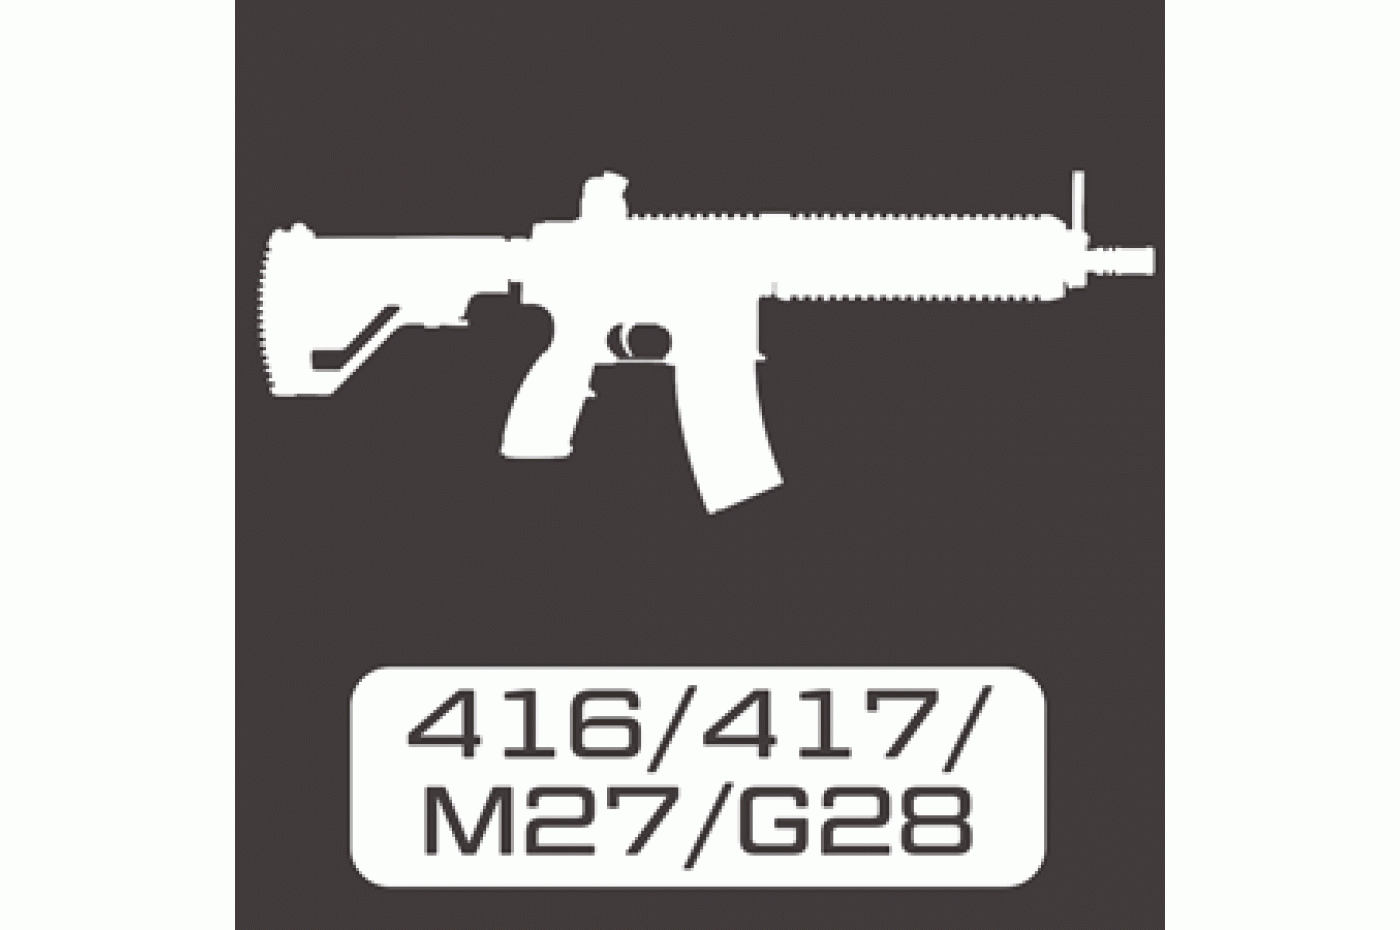 416 / 417 / M27 / G28